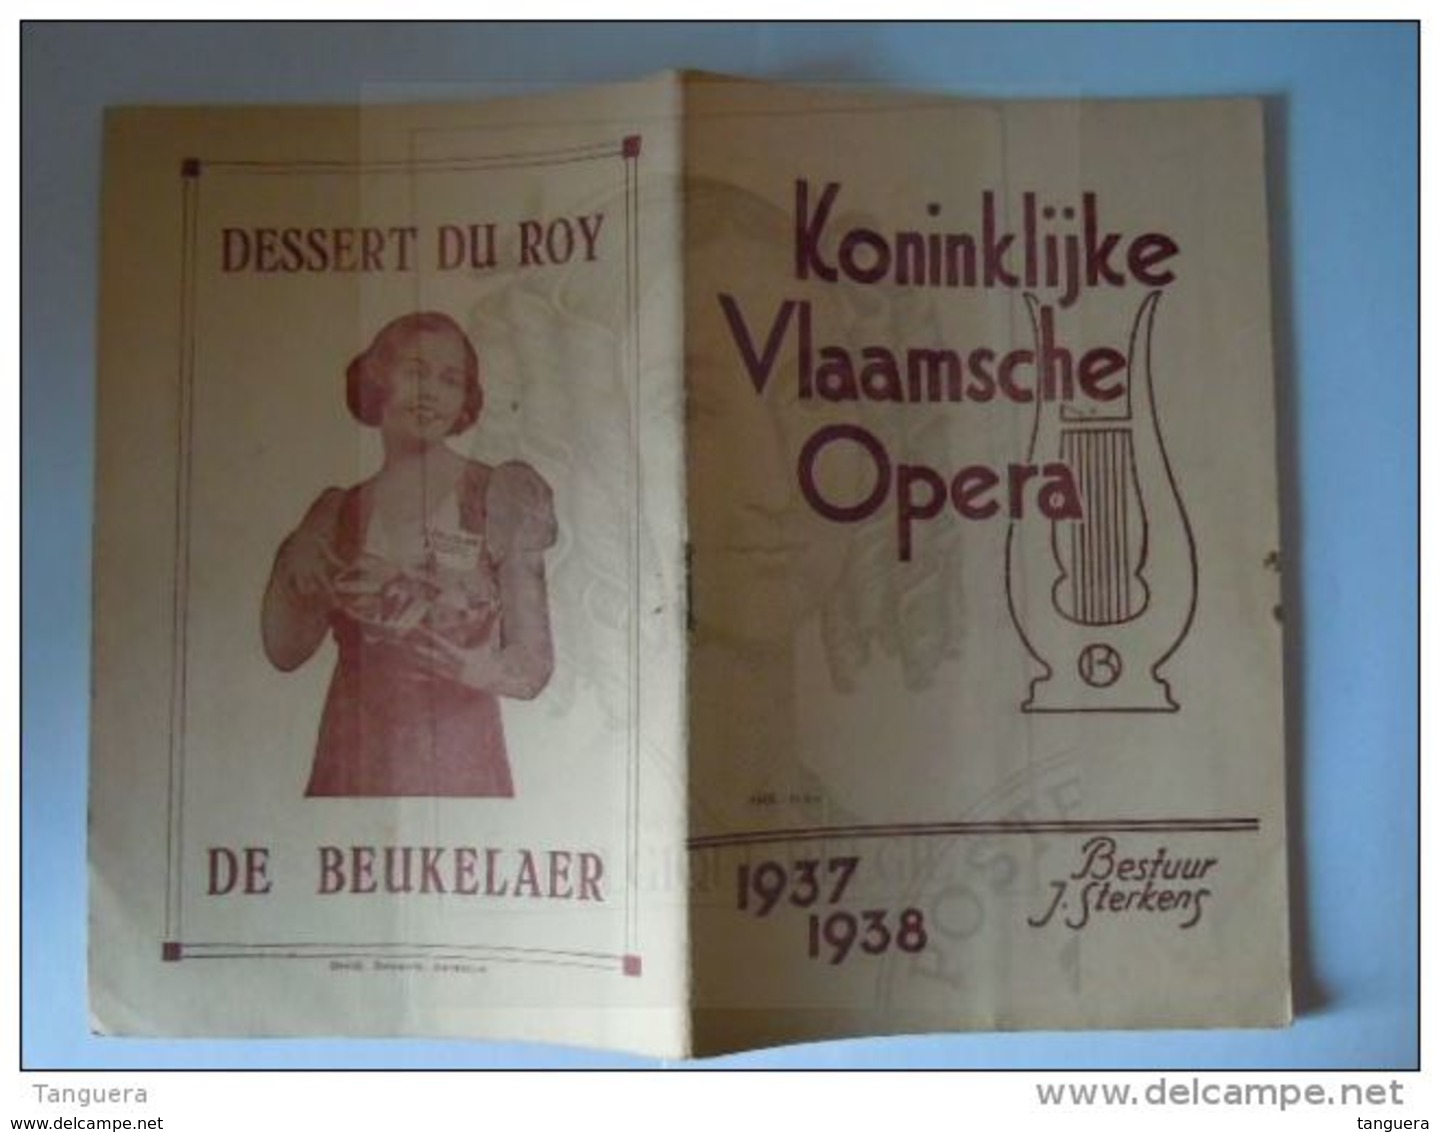 Antwerpen 1938 Koninklijke Vlaamse Opera Programma Cosi fan tutte 36 pagina's 13,8 x 21 cm